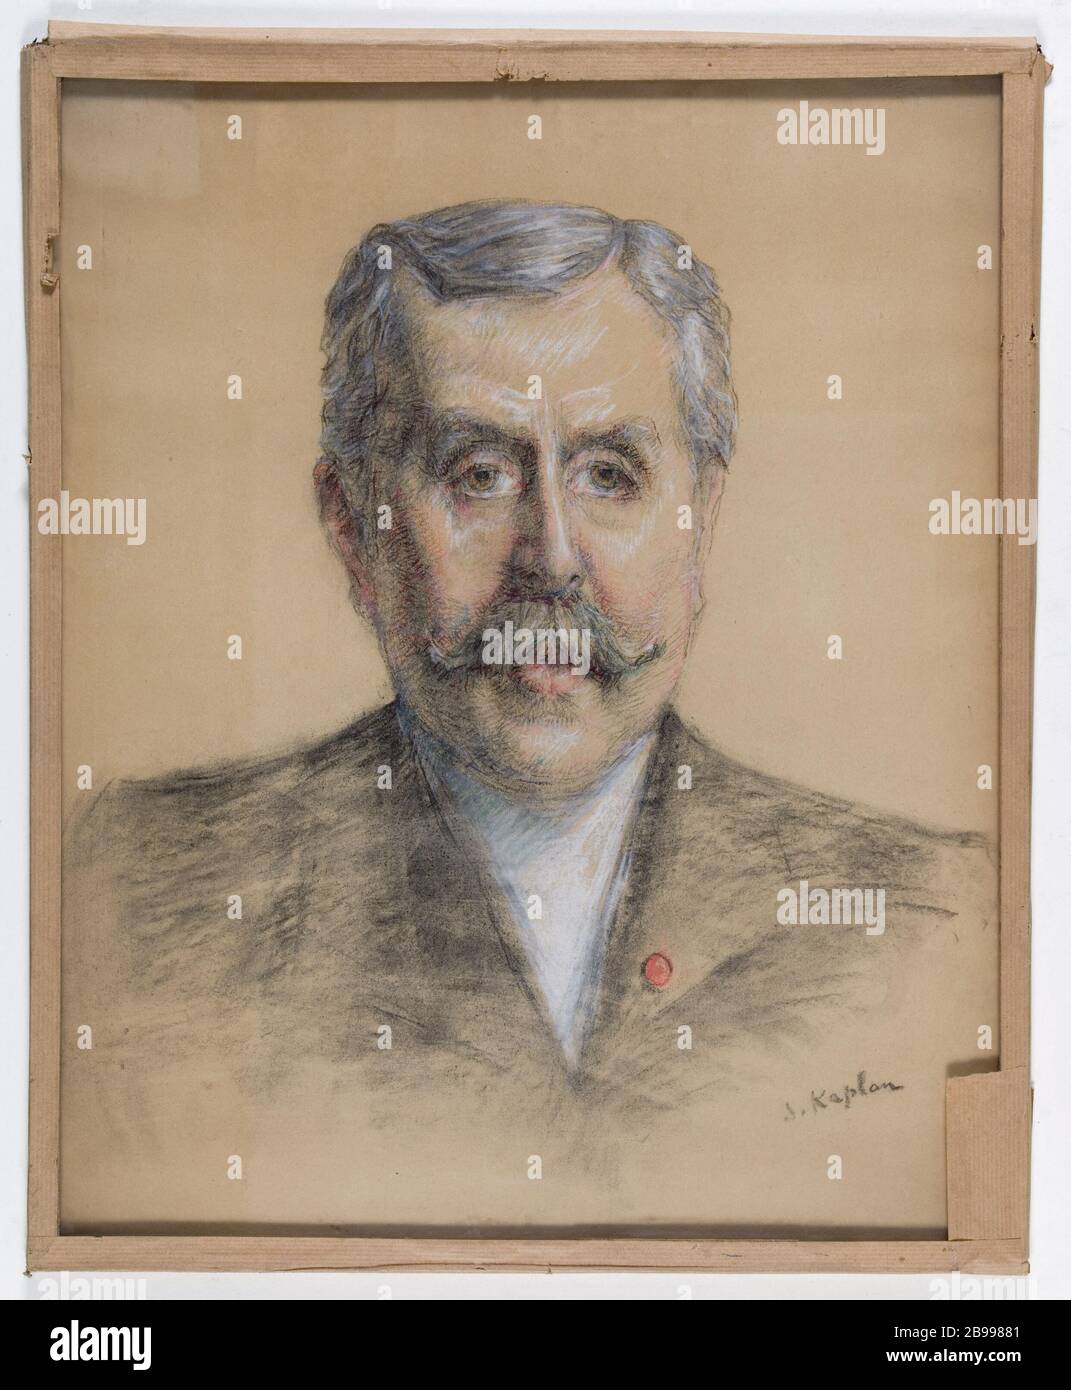 PORTRAIT OF FRANCOIS BERGER Kaplan. 'Portrait de François Berger'. Pastel. Paris, musée Carnavalet. Stock Photo